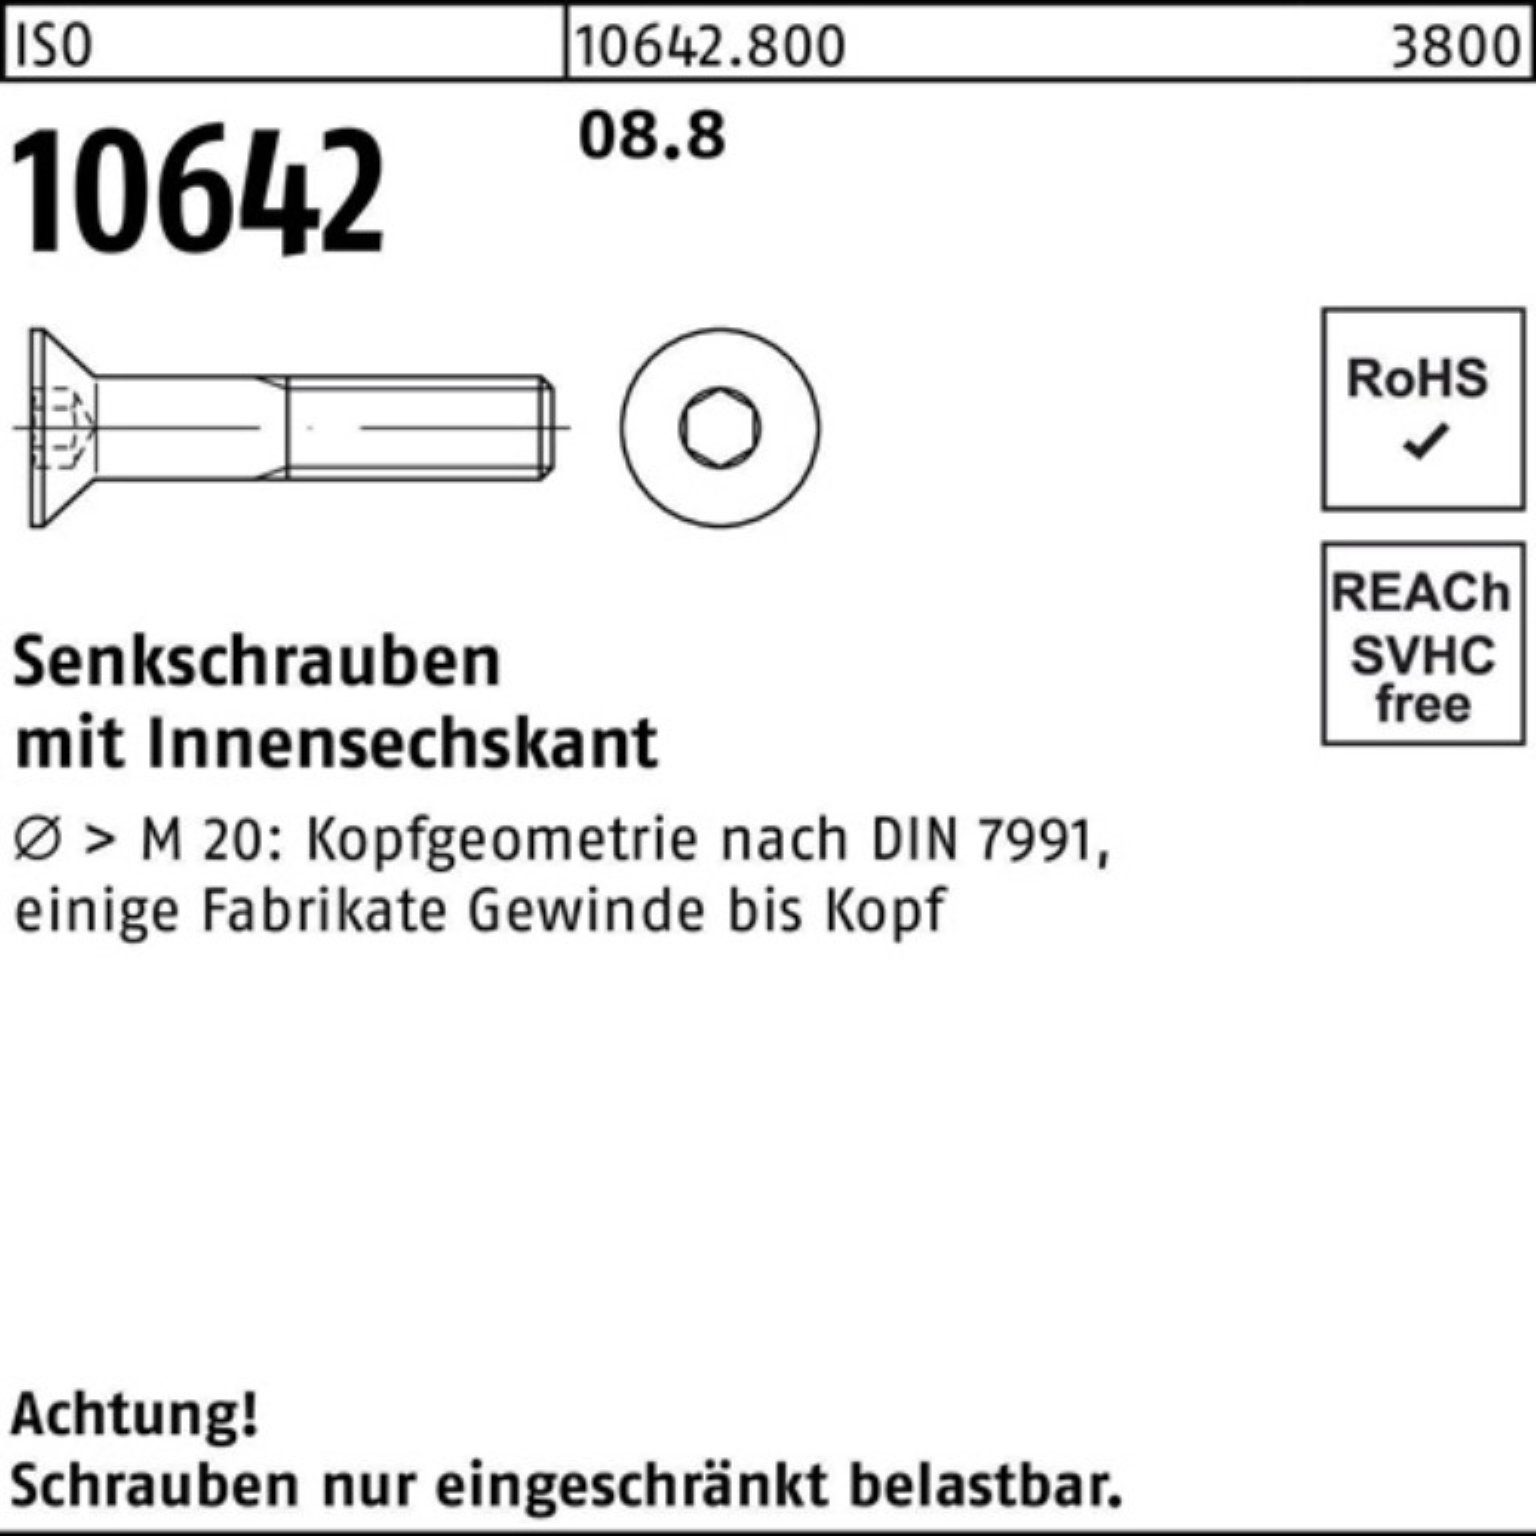 ISO Senkschraube M8x 10642 200er 200 Stück 12 Reyher Pack ISO Innen-6kt Senkschraube 8.8